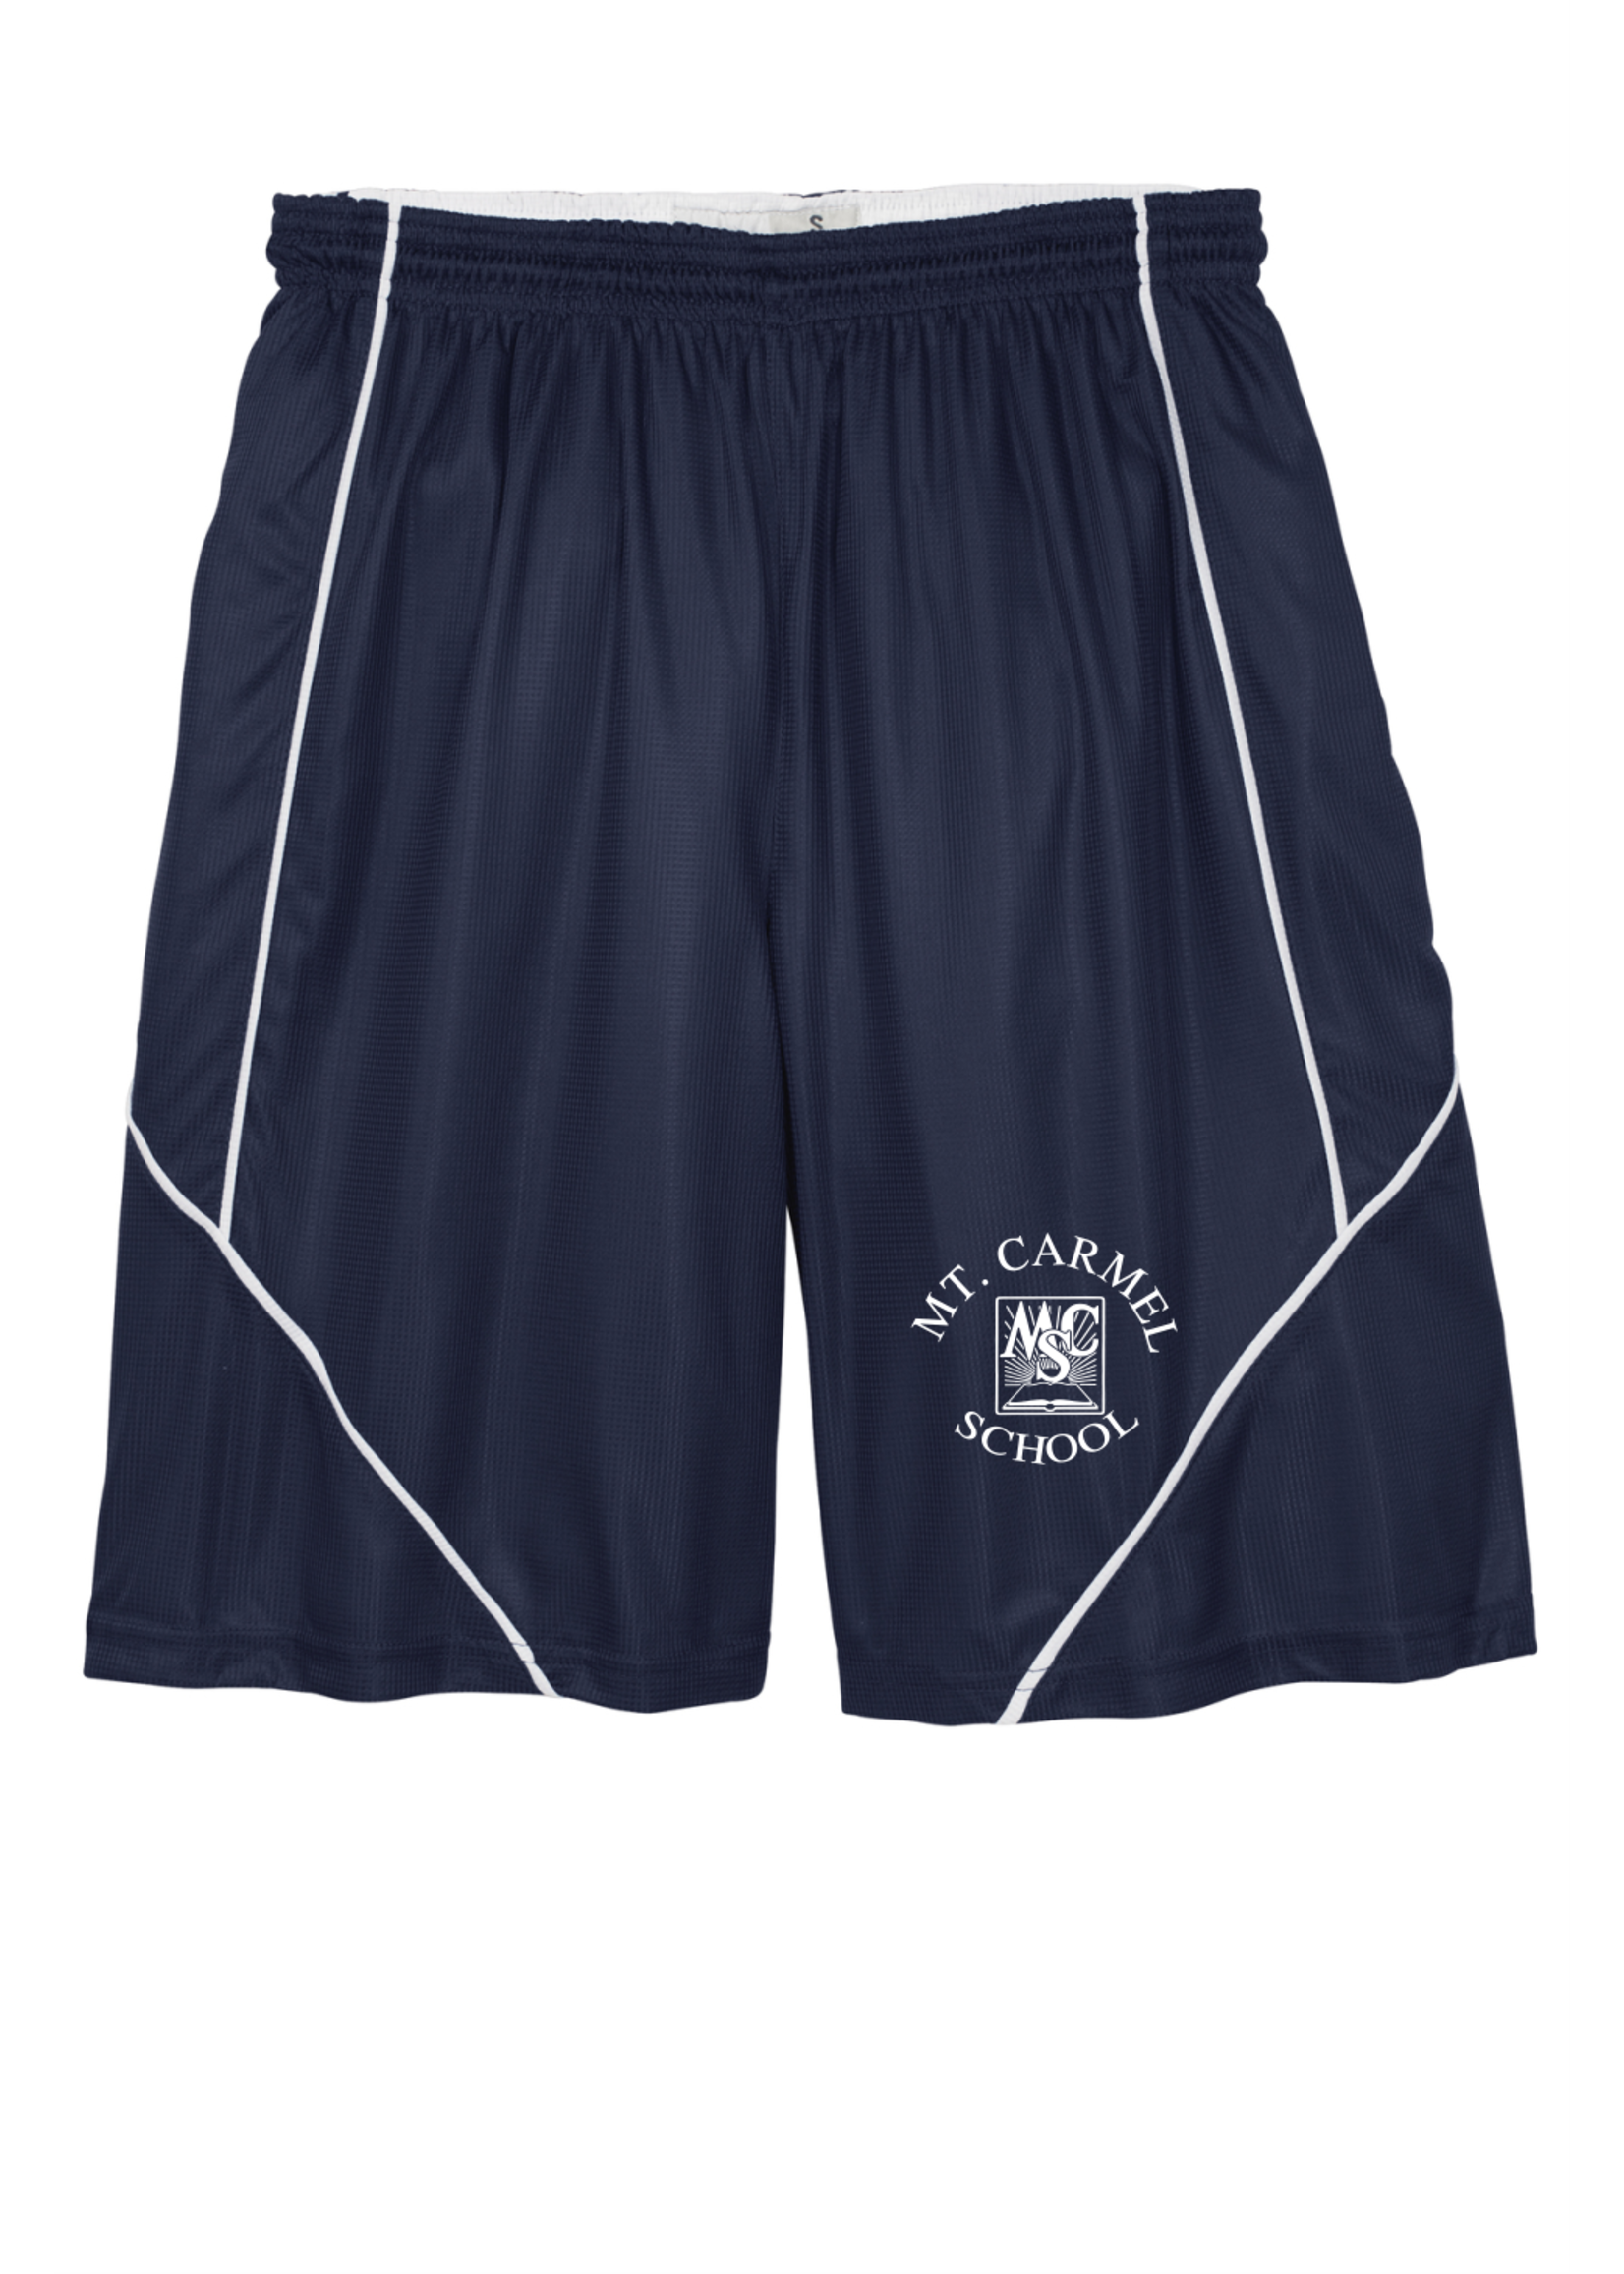 OLMCS Navy Reversable Shorts